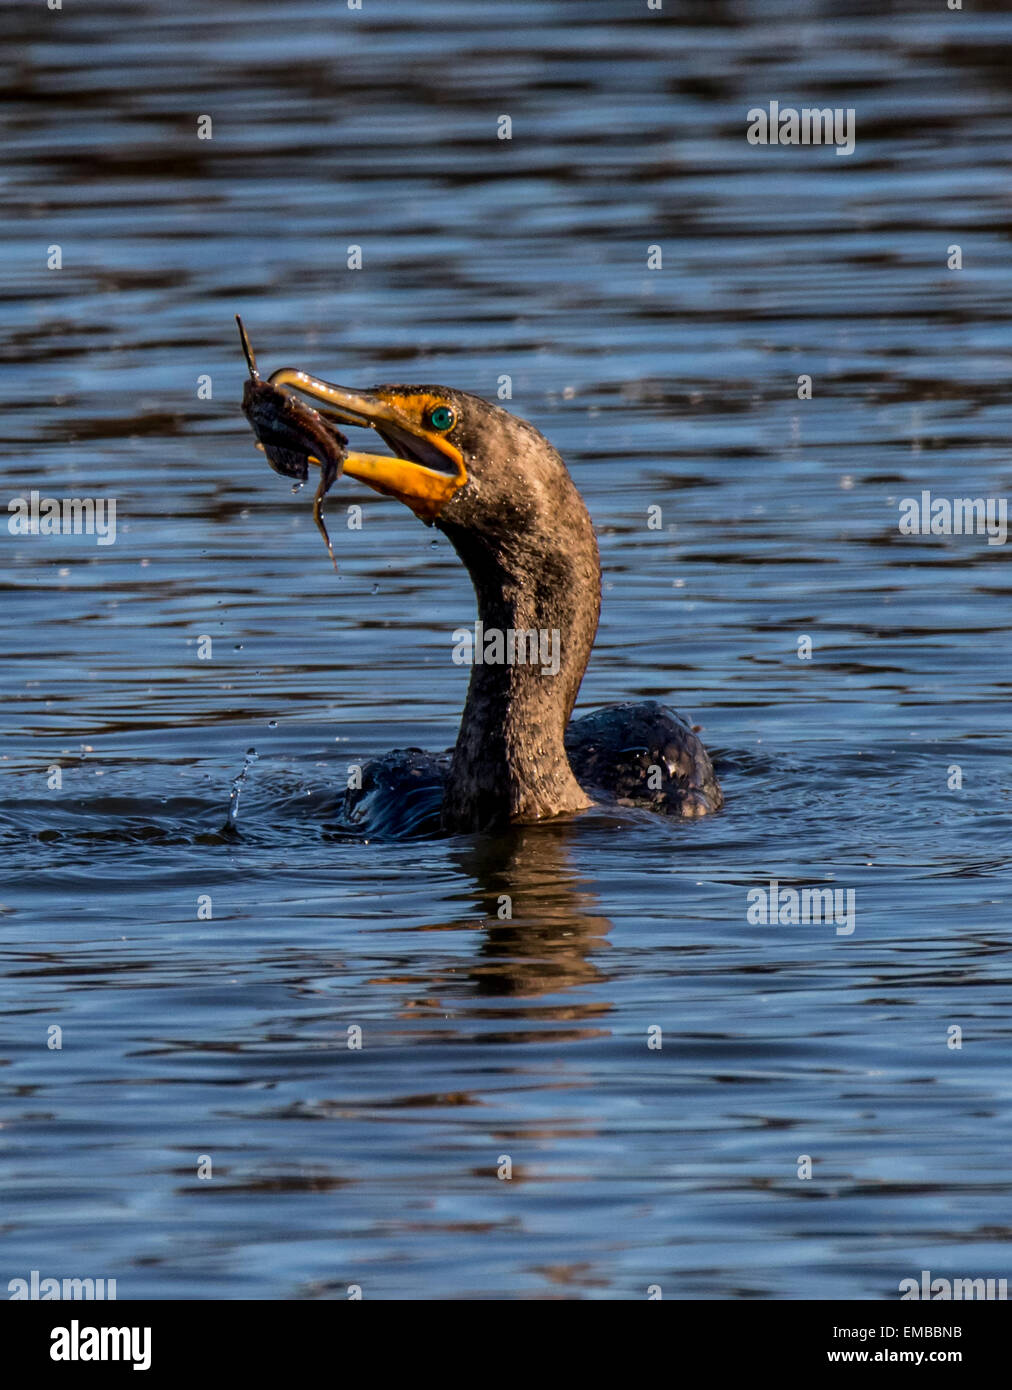 Cormorán de doble cresta (Phalacrocorax auritus) la natación y la pesca en el lago pequeño Foto de stock